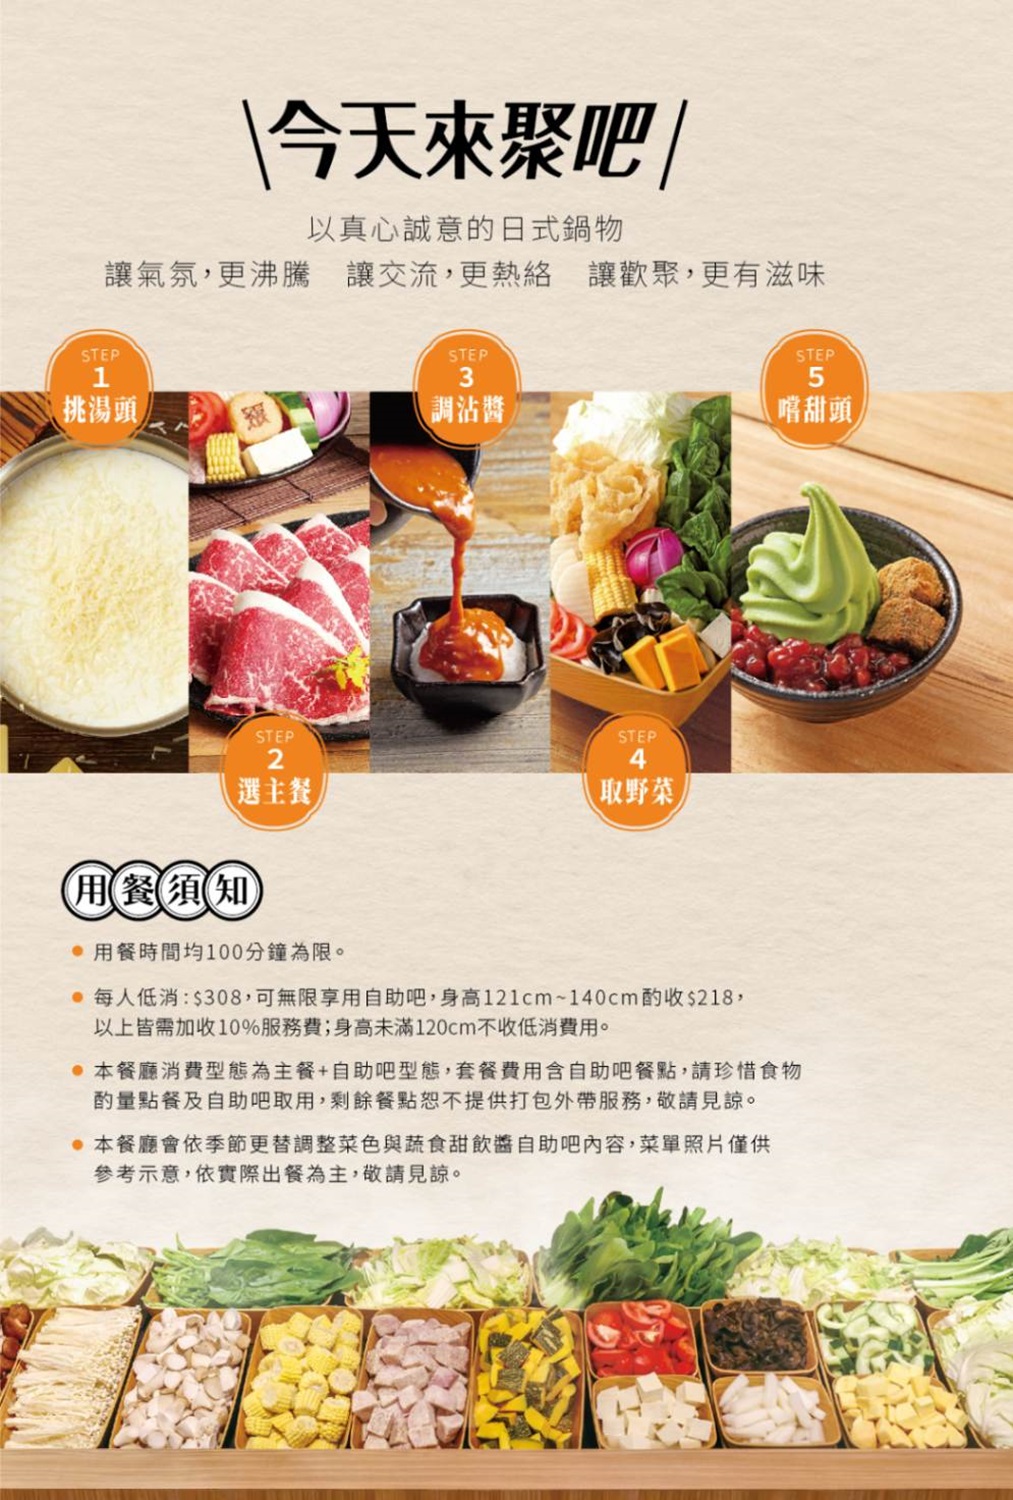 聚日式鍋物 菜單